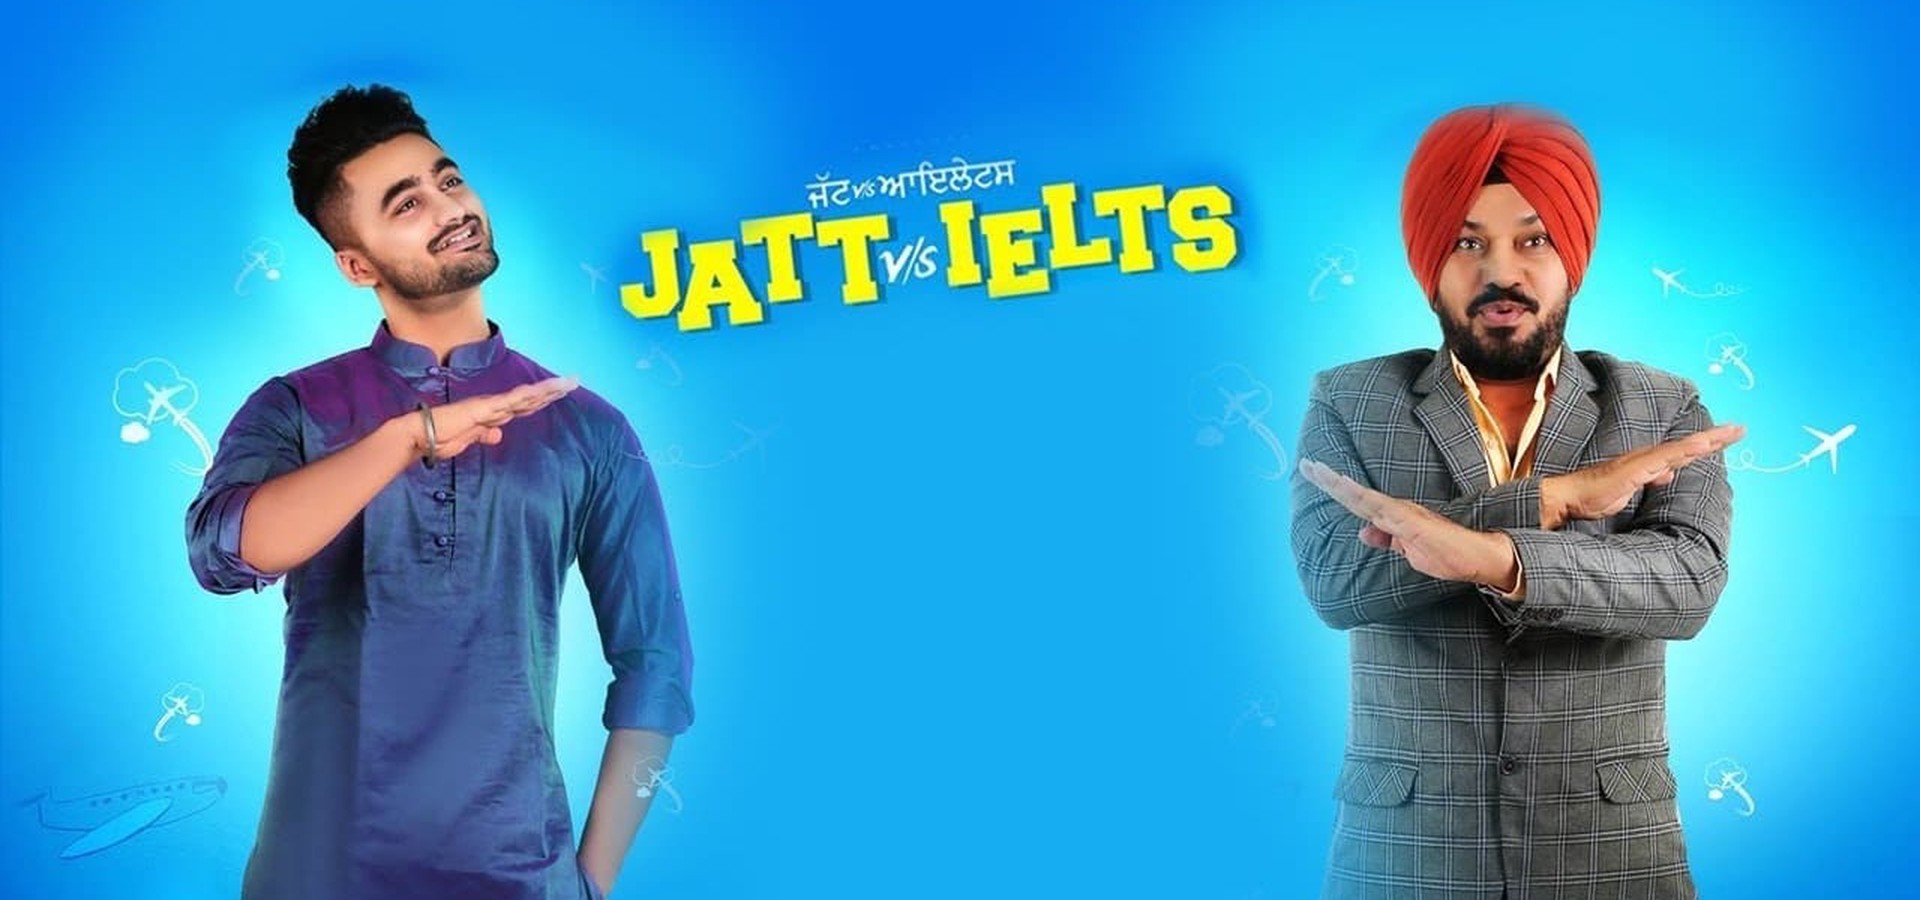 Jatt vs. Ielts